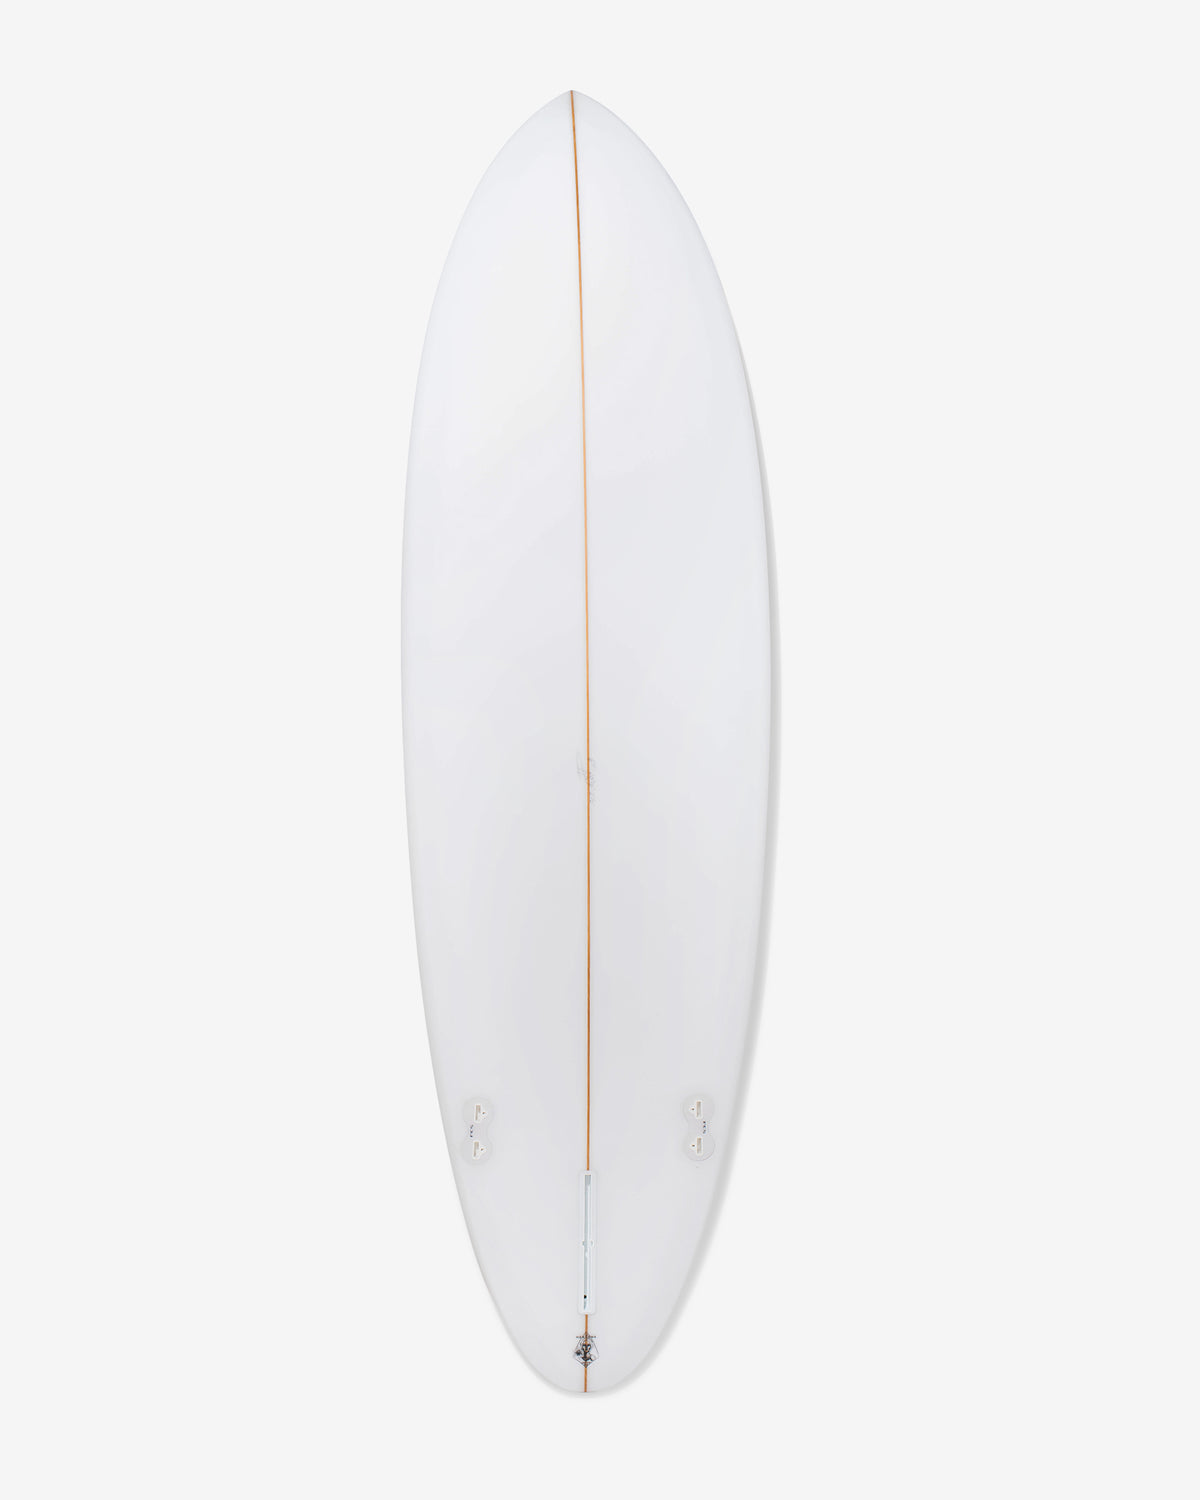 Plaid Surfboard